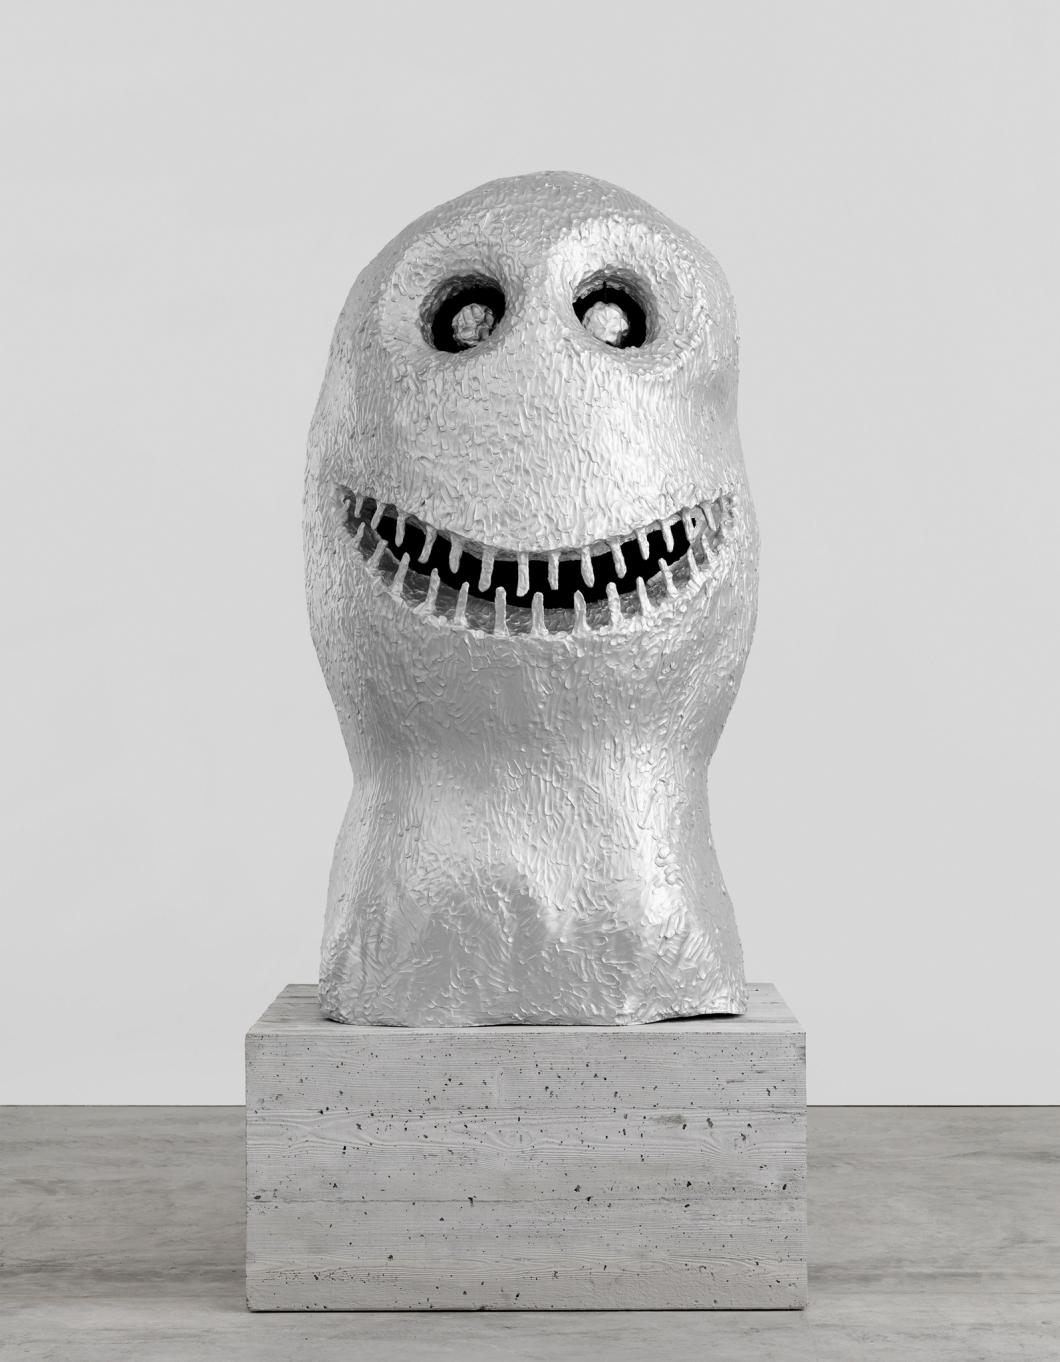 Bild vergrössern: Eine Skulptur aus Aluminium, die wie ein vereinfachter grinsender Kopf aussieht, auf einem Betonsockel